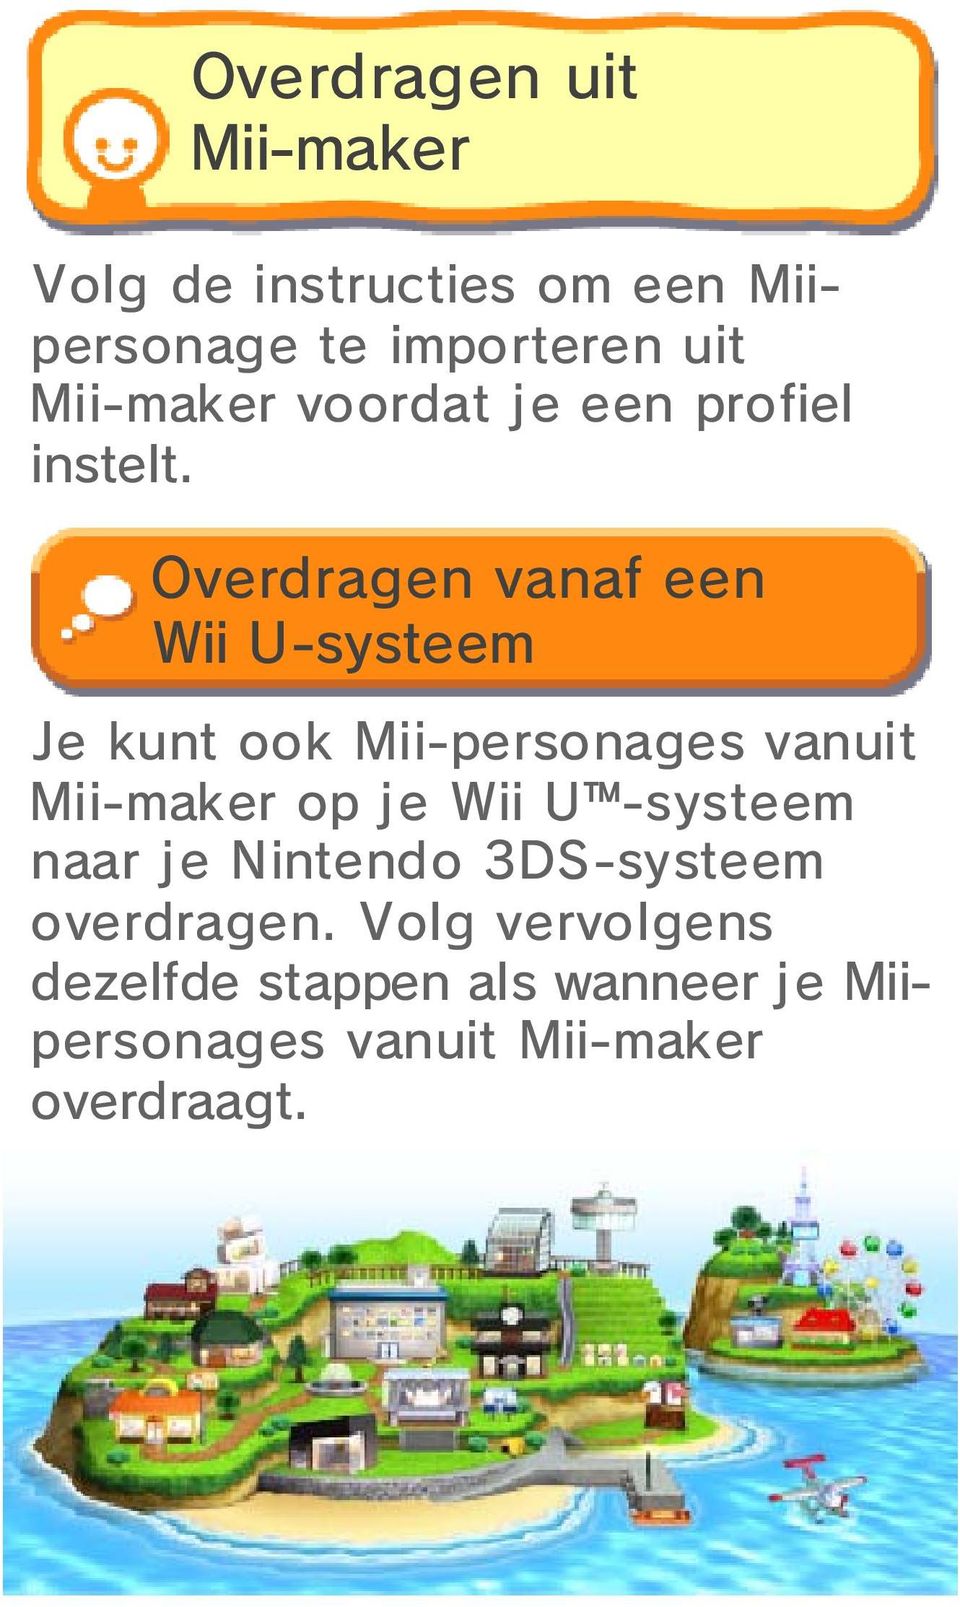 Overdragen vanaf Wii U-systeem een Je kunt ook Mii-personages vanuit Mii-maker op je Wii